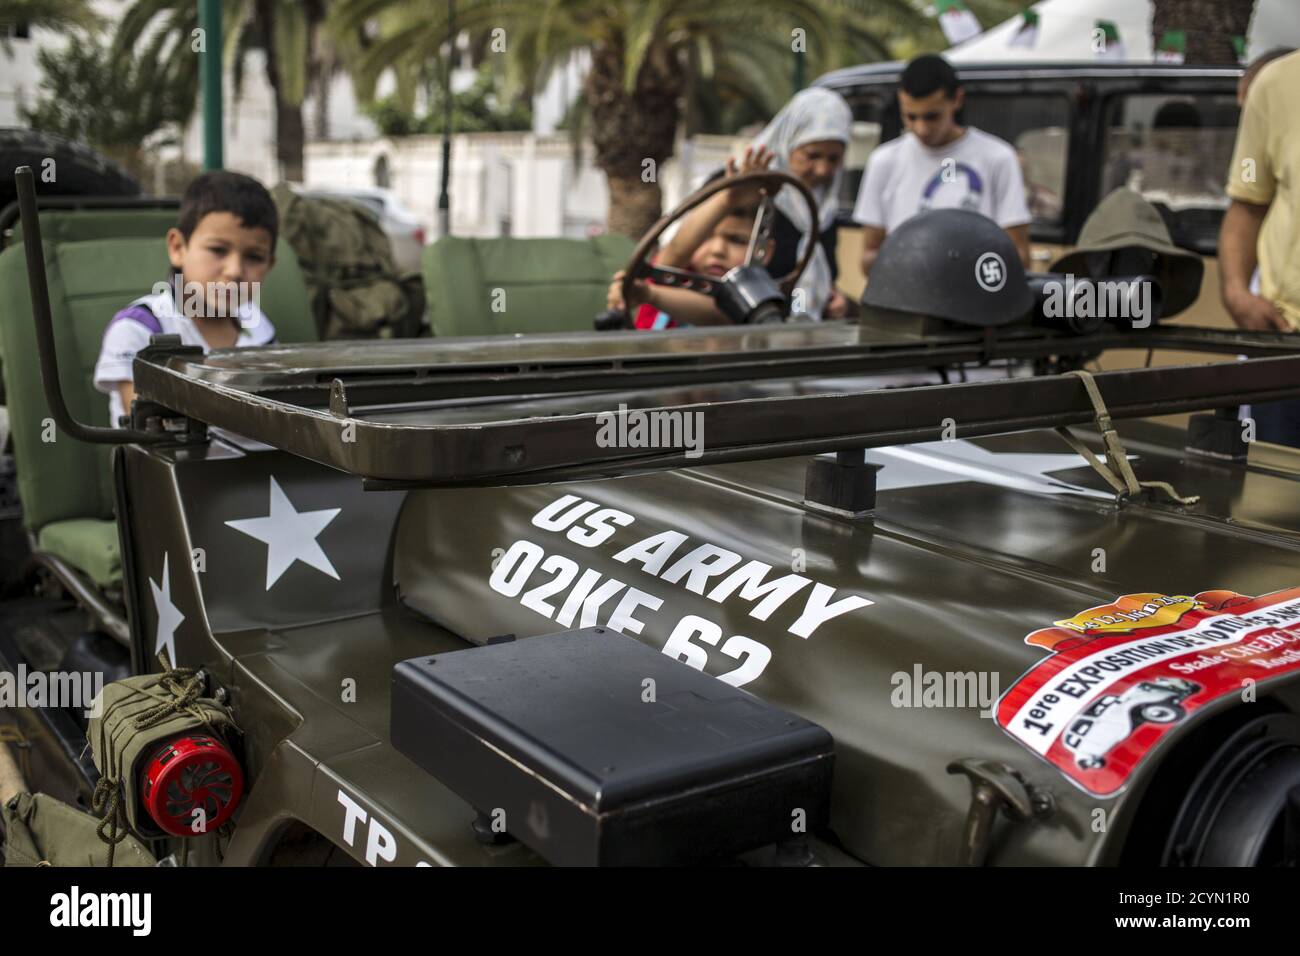 Les garçons sont assis dans une jeep militaire d'époque exposée lors d'une  exposition de voitures d'époque à Rouiba, sur la jupe d'Alger, Algérie, le  12 juin 2015. L'association algérienne locale “Nass Al